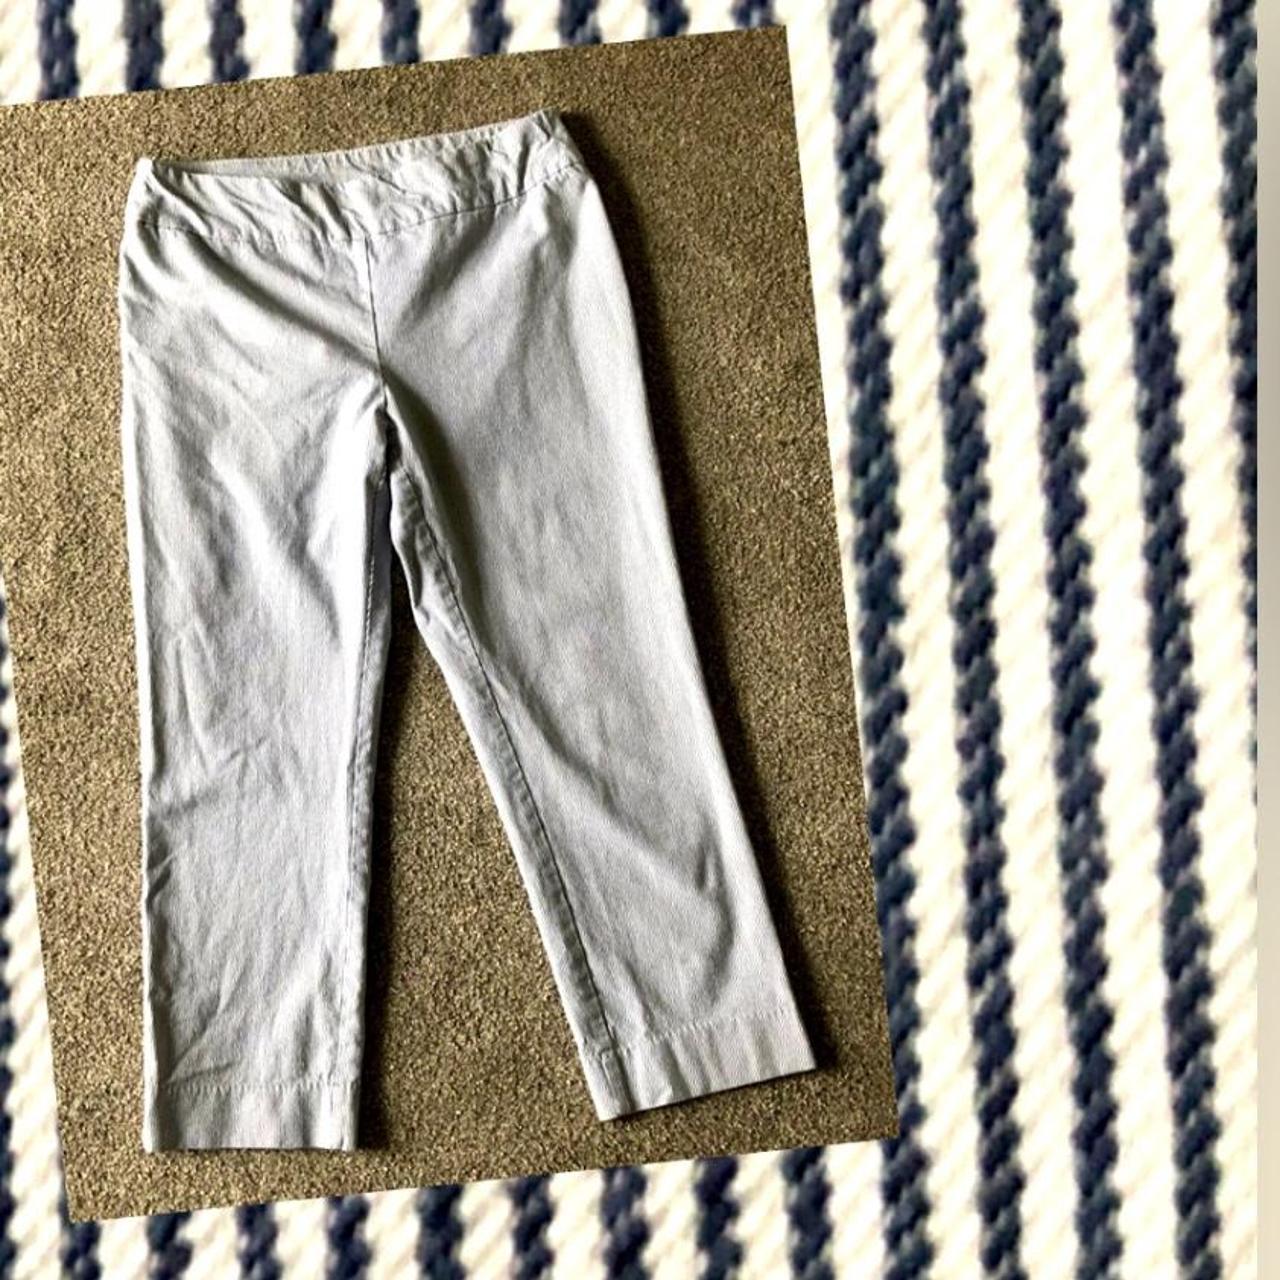 Chicos ' So Slimming ' Womens Medium Dark Wash Crop Jeans Size 1.5